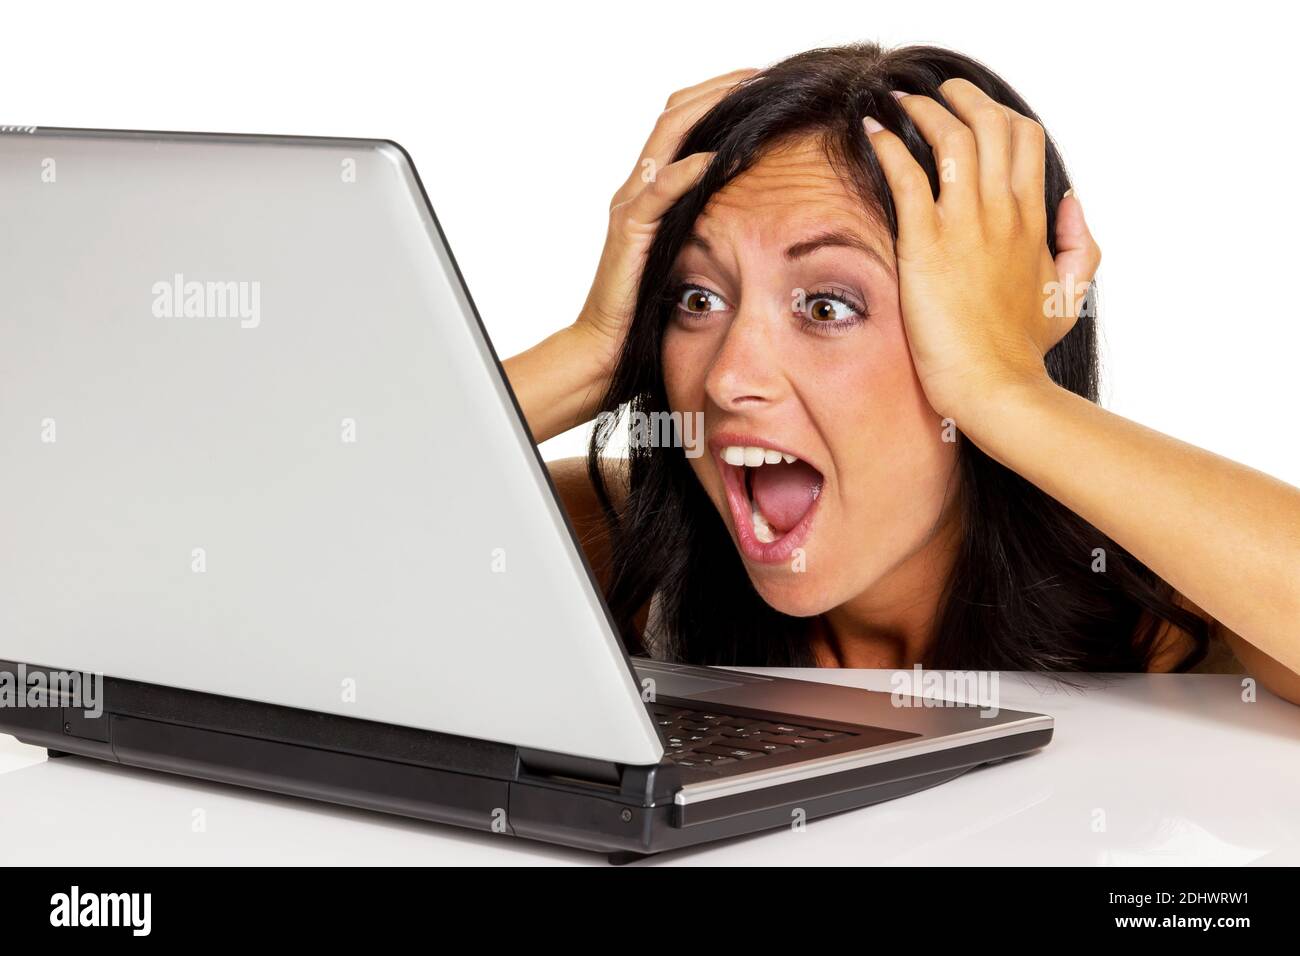 Junge Frau mit laptop ist verzweifelt, fehlende computer Kenntnisse, Foto Stock